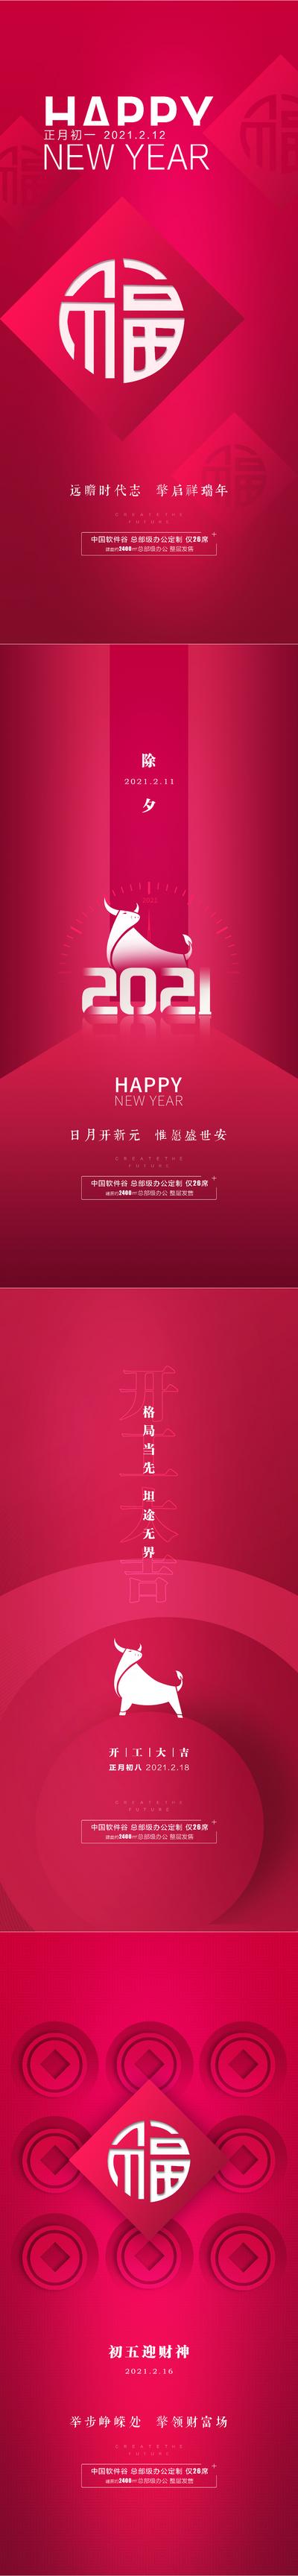 南门网 海报 中国传统节日 过年 春节 初一 开工 财神 福 红色 系列